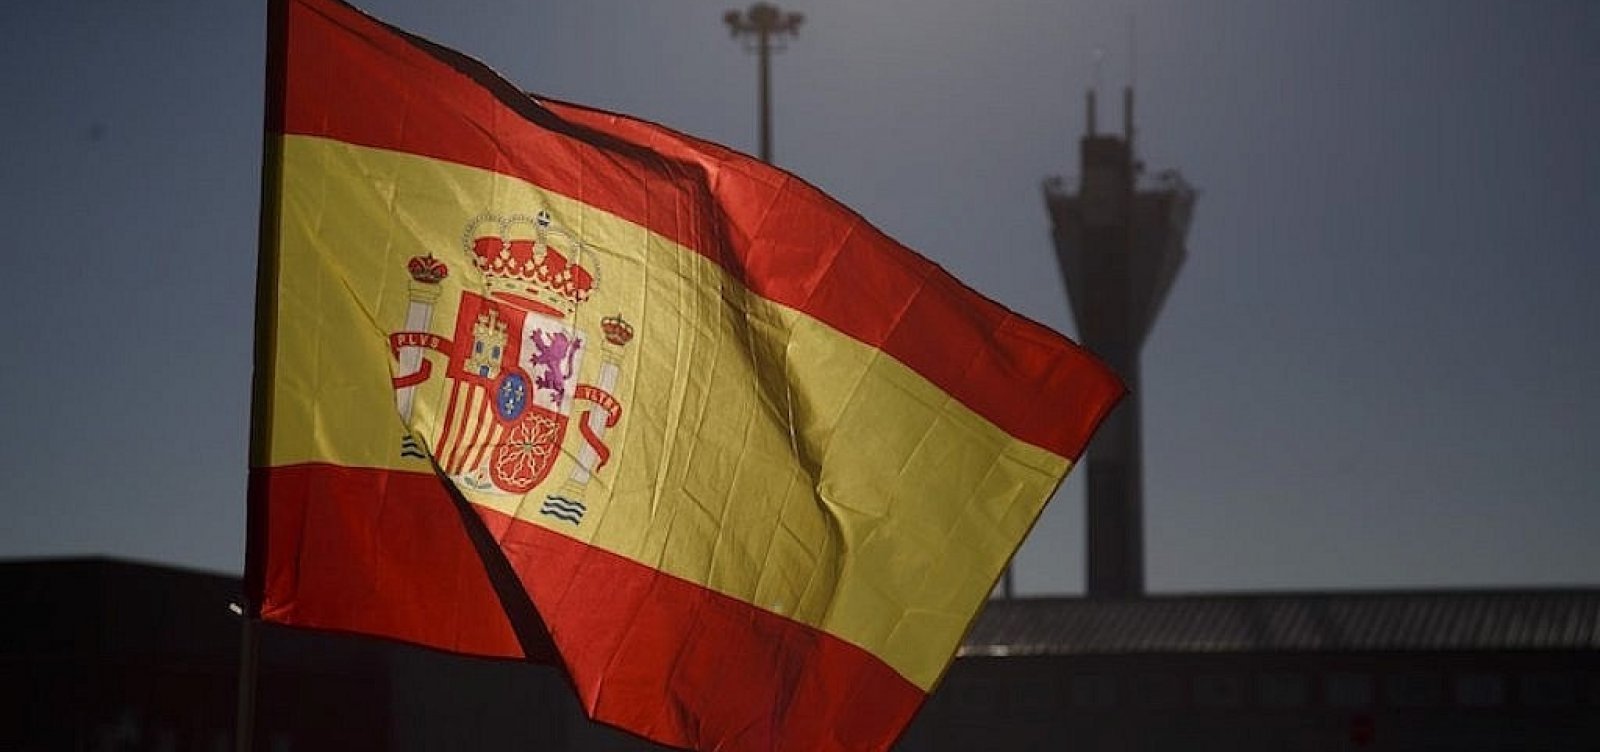 Governo da Espanha proíbe salários diferentes para homens e mulheres